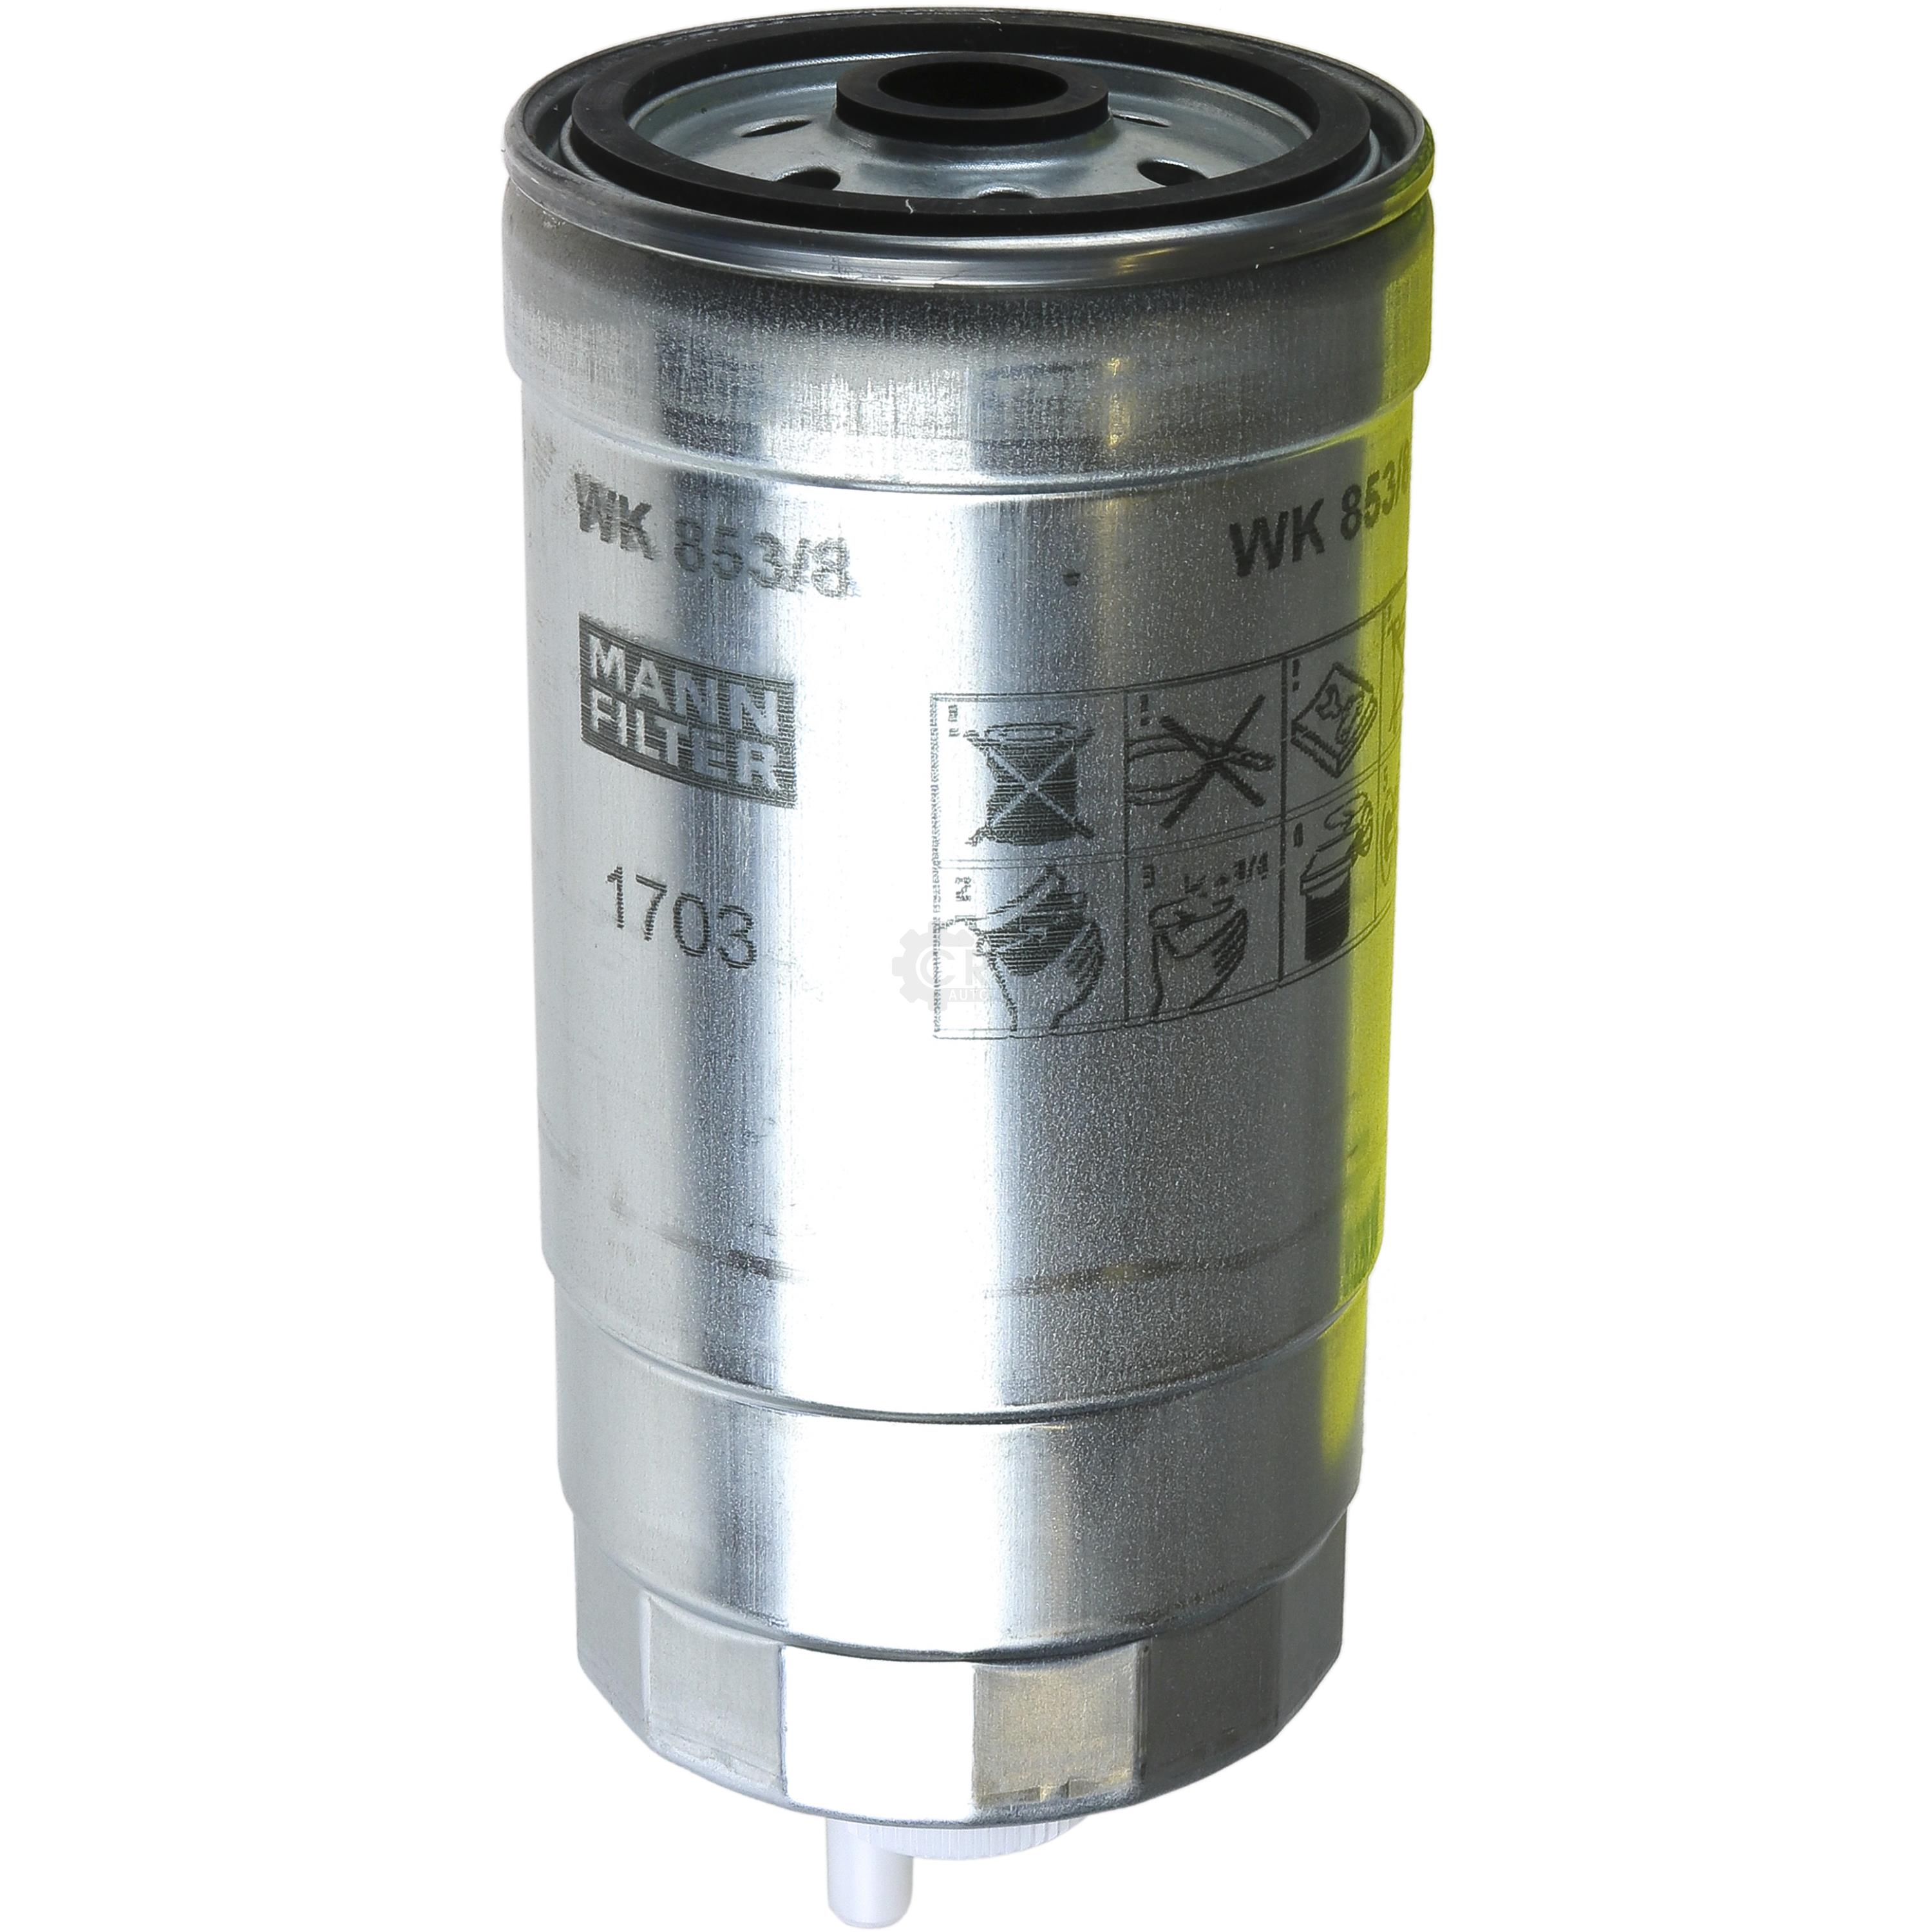 MANN-FILTER Kraftstofffilter WK 853/8 Fuel Filter